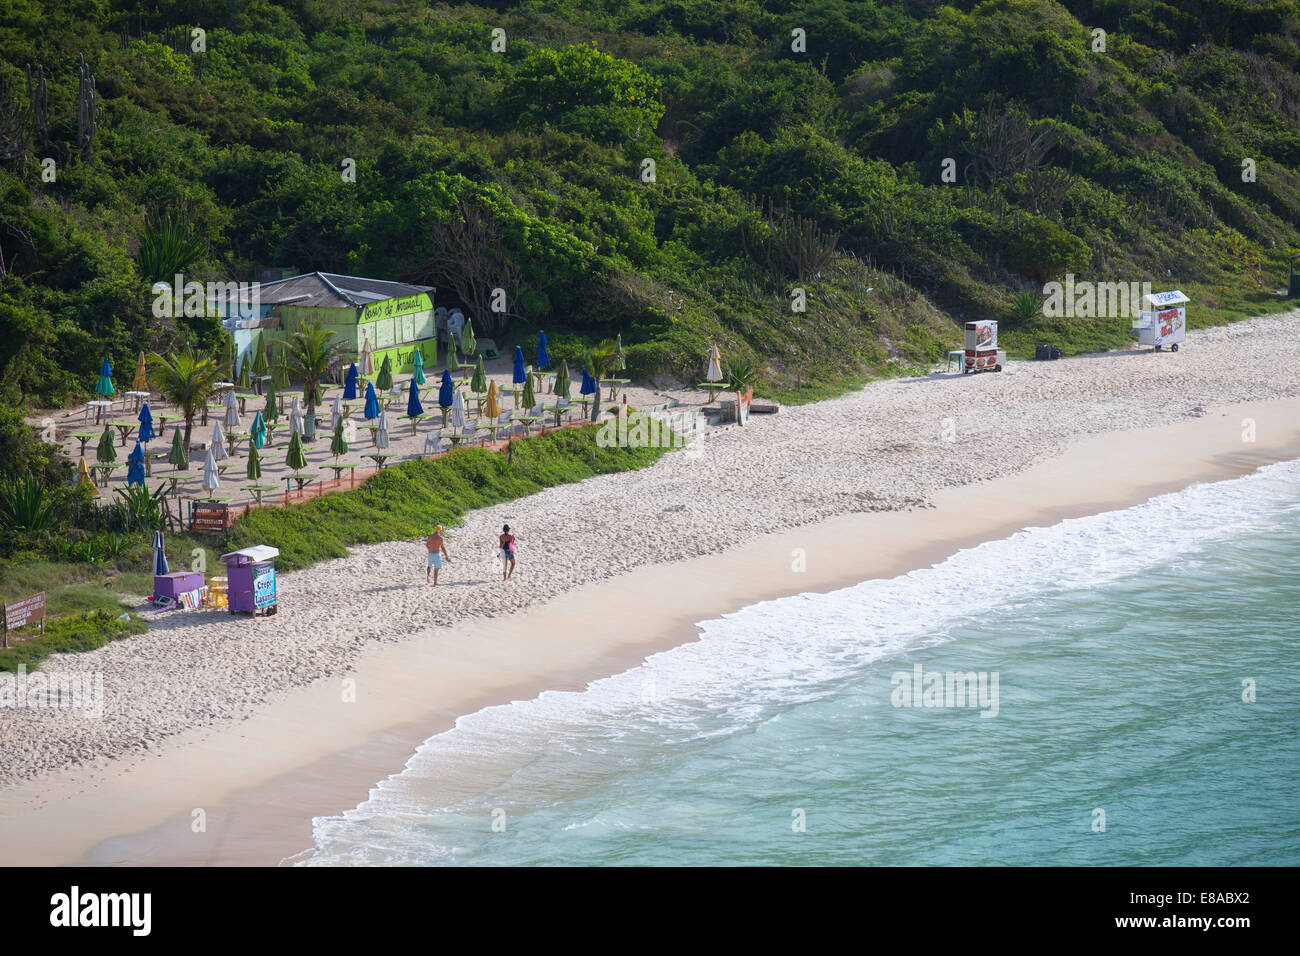 Praia do Forno, Arraial do Cabo, Rio de Janeiro State, Brazil Stock Photo